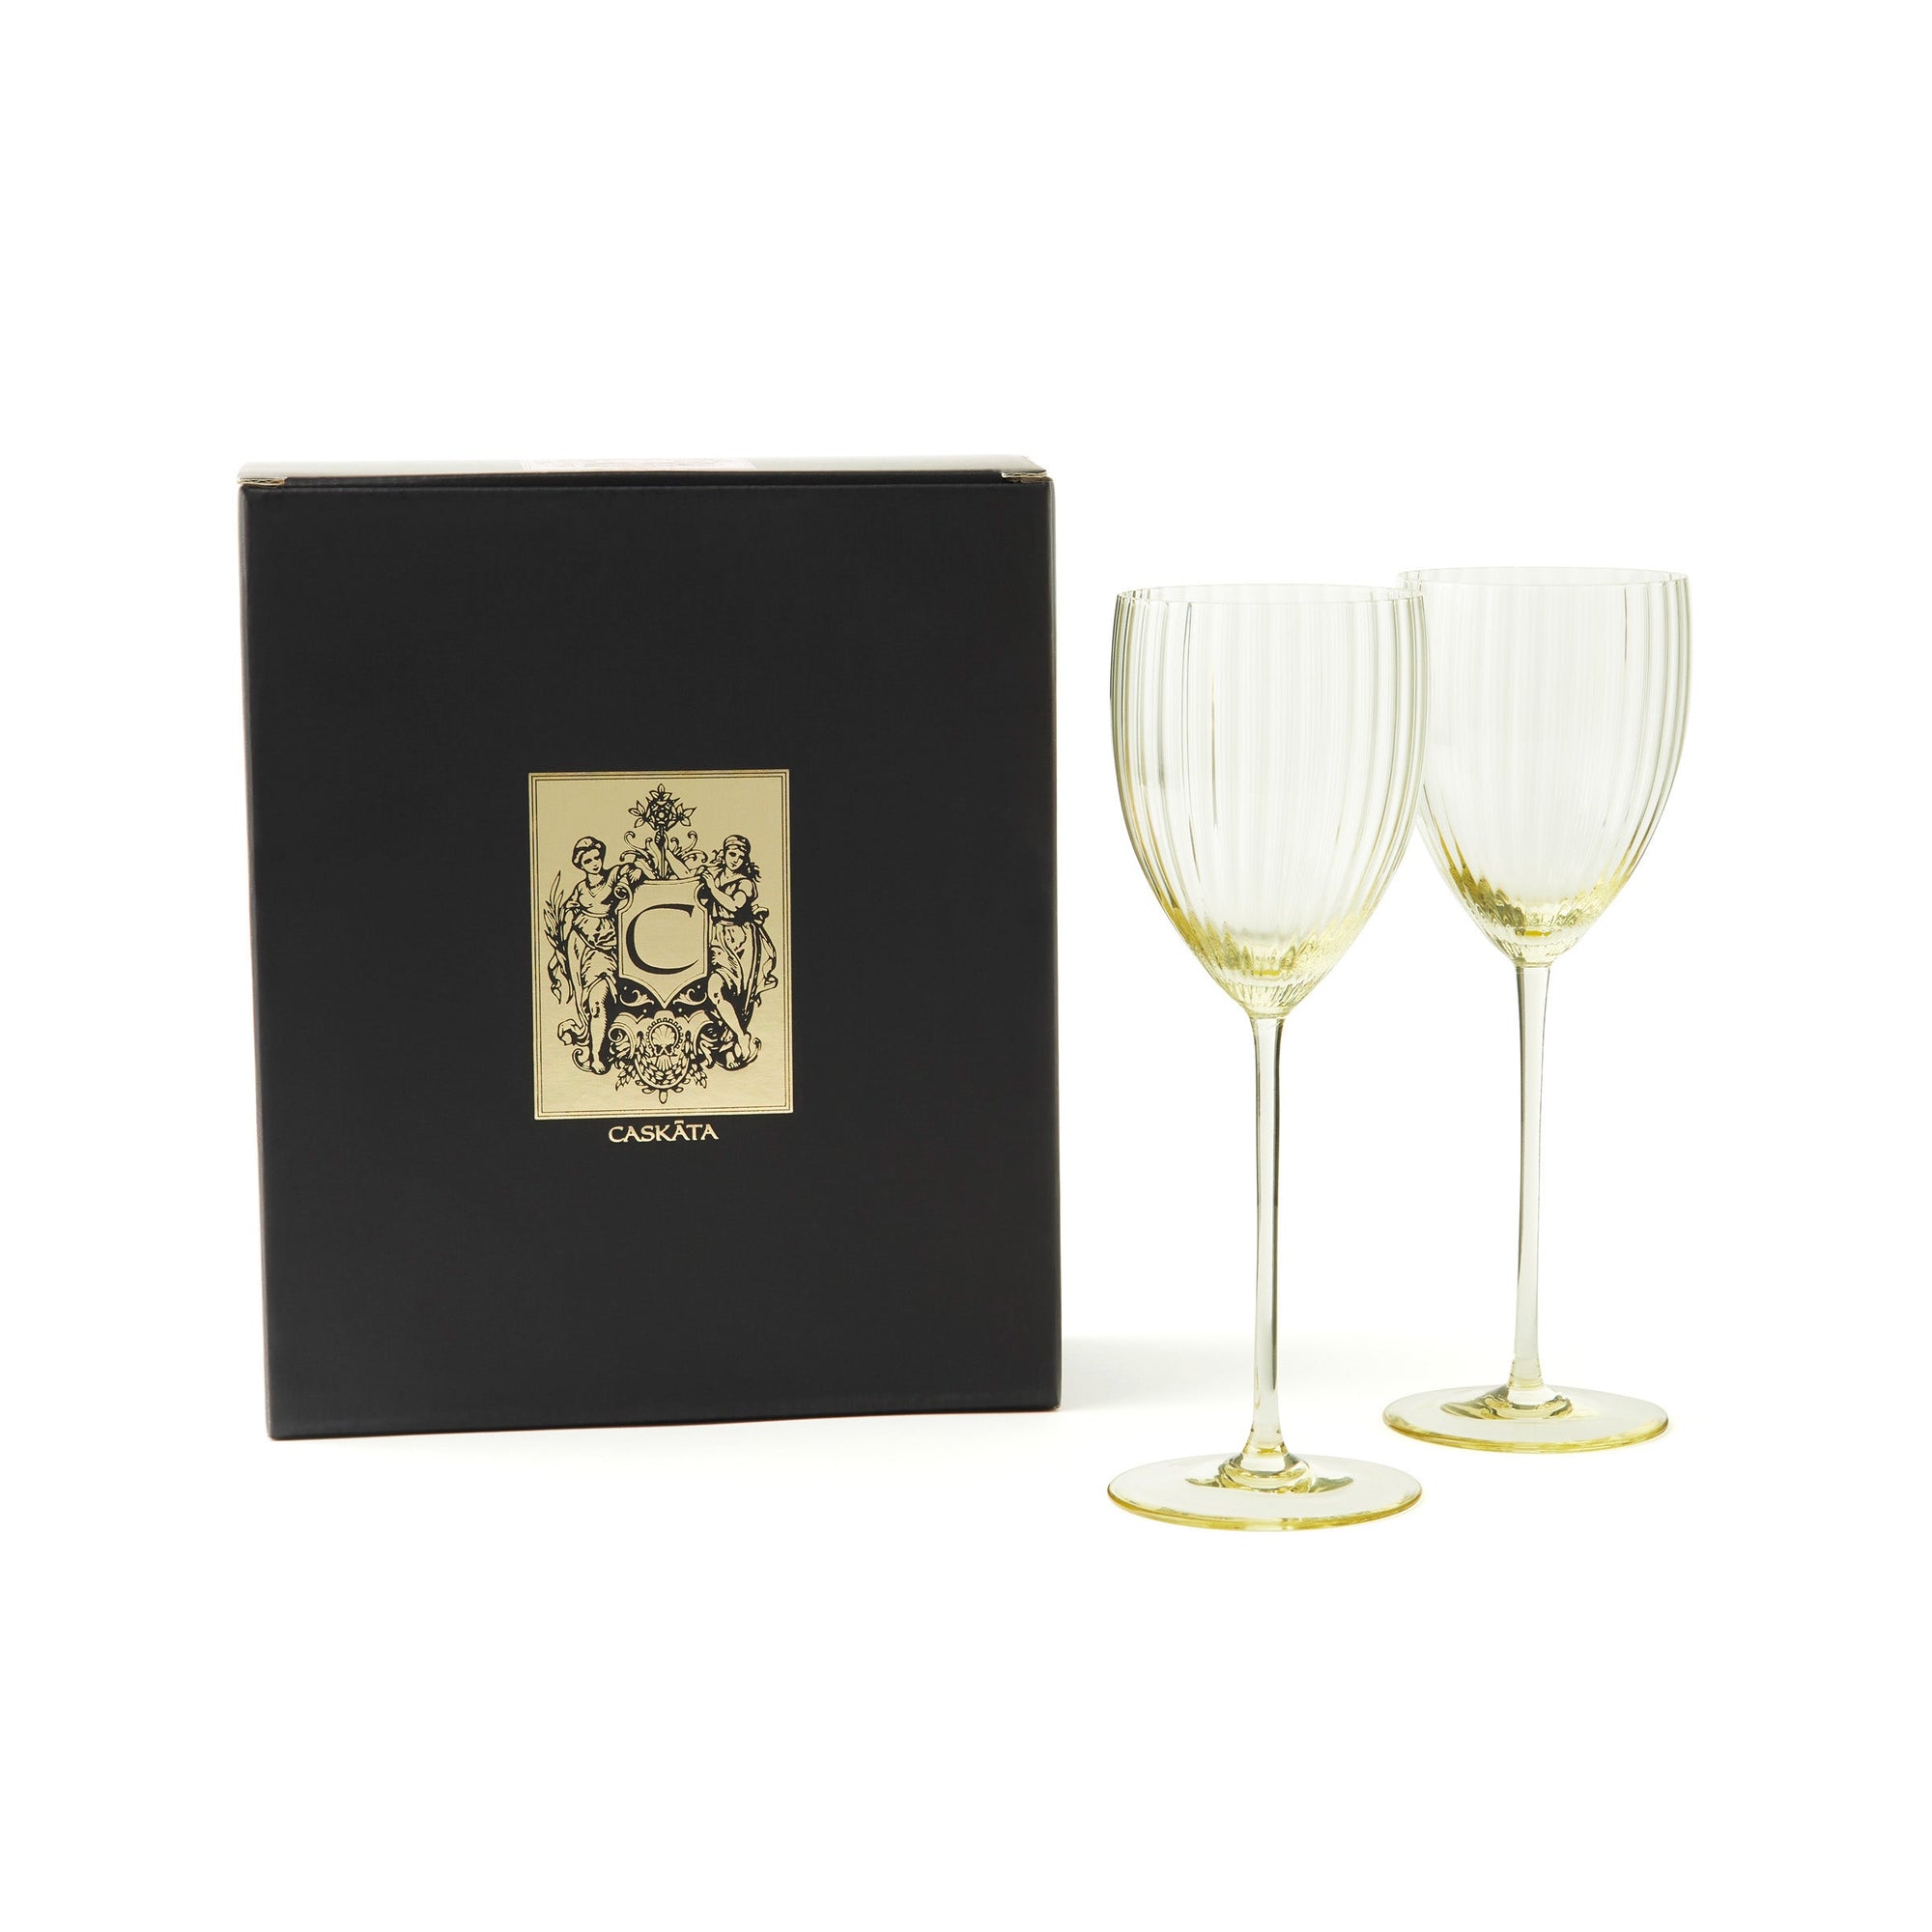 Quinn Citrine Yellow White Wine Crystal Glasses Set of 2 from Caskata